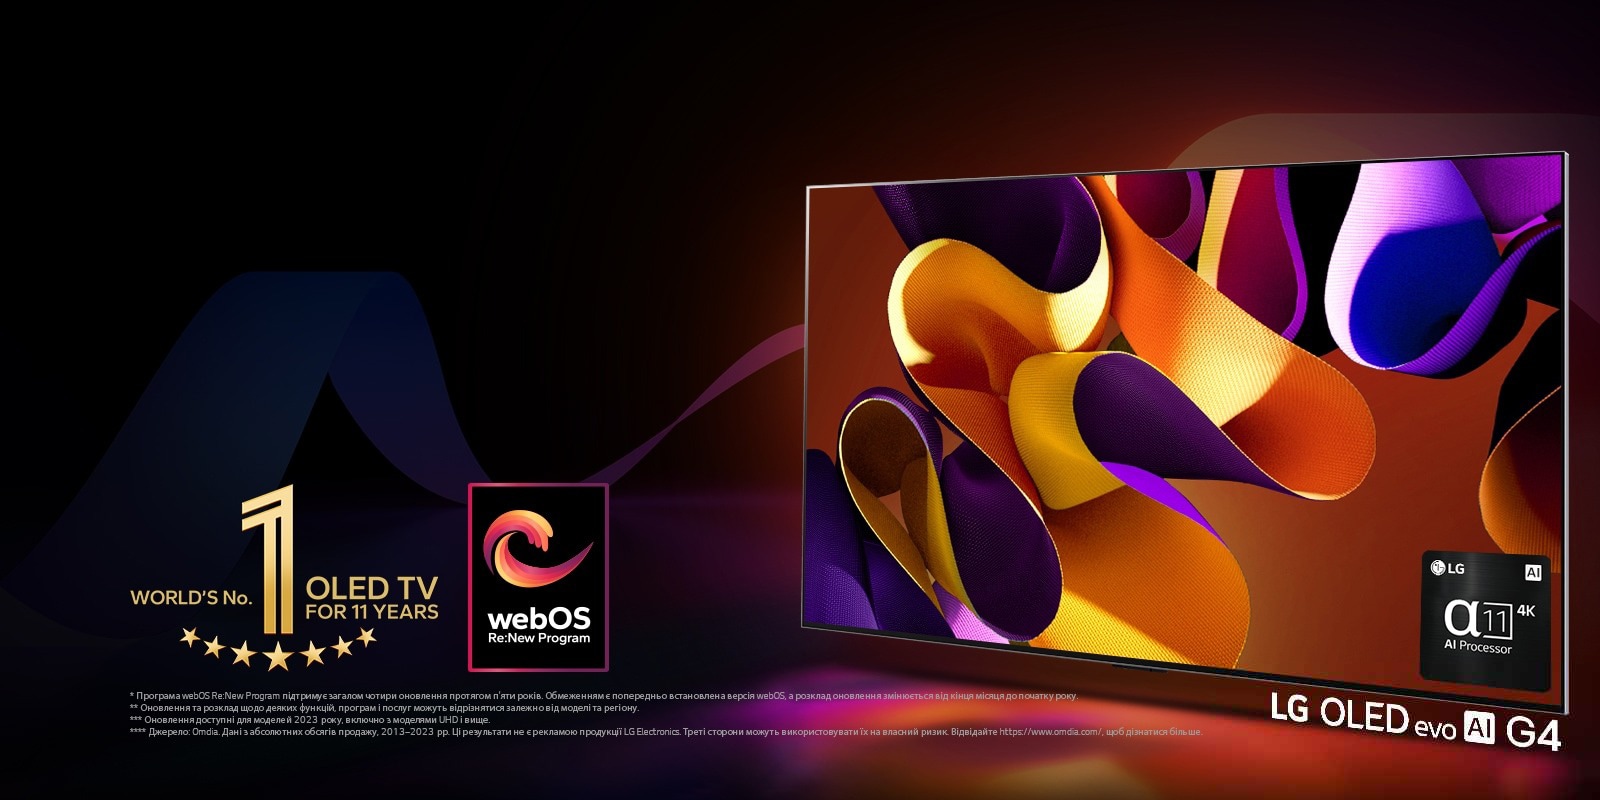 Телевізор LG OLED evo TV G4 з абстрактним кольоровим малюнком на екрані на чорному тлі з витонченими вихорами кольорів. Випромінення світла з екрана відкидають барвисті тіні. Процесор alpha 11 AI Processor 4K у нижньому правому куті екрана телевізора. На зображенні емблема World's number 1 OLED TV for 11 Years і логотип webOS Re:New Program. Застереження щодо відповідальності: "Програма webOS Re:New Program підтримує загалом чотири оновлення протягом п’яти років. Обмеженням є попередньо встановлена версія webOS, а розклад оновлення змінюється від кінця місяця до початку року".  "Оновлення та розклад щодо деяких функцій, програм і послуг можуть відрізнятися залежно від моделі та регіону".  "Оновлення доступні для моделей 2023 року, включно з моделями UHD і вище". "Джерело: Omdia. Дані з абсолютних обсягів продажу, 2013–2023 рр. Ці результати не є рекламою продукції LG Electronics. Треті сторони можуть використовувати їх на власний ризик. Відвідайте https://www.omdia.com/, щоб дізнатися більше".